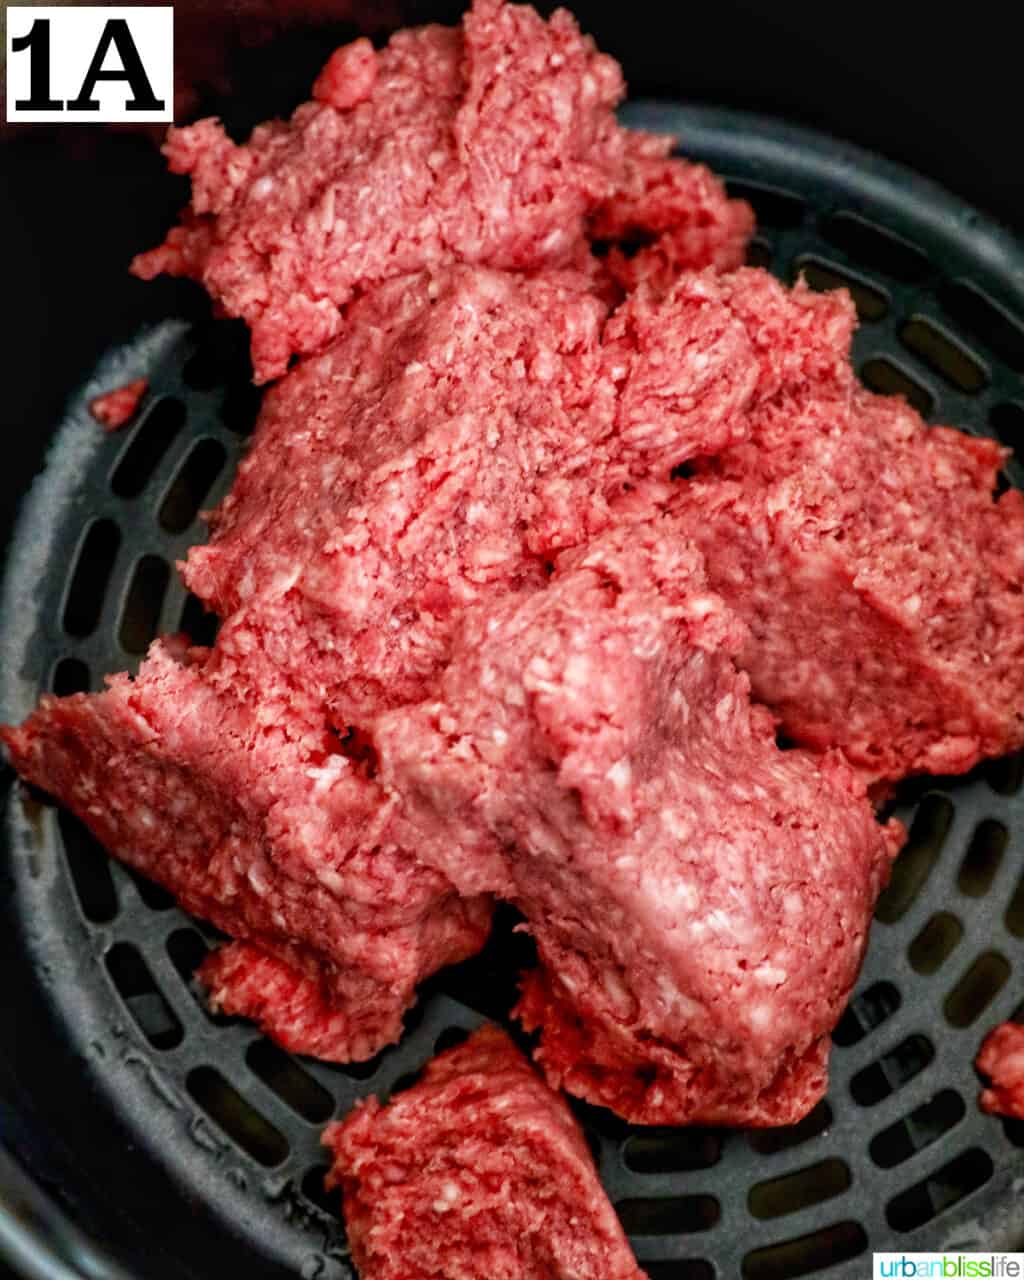 ground beef in an air fryer basket.